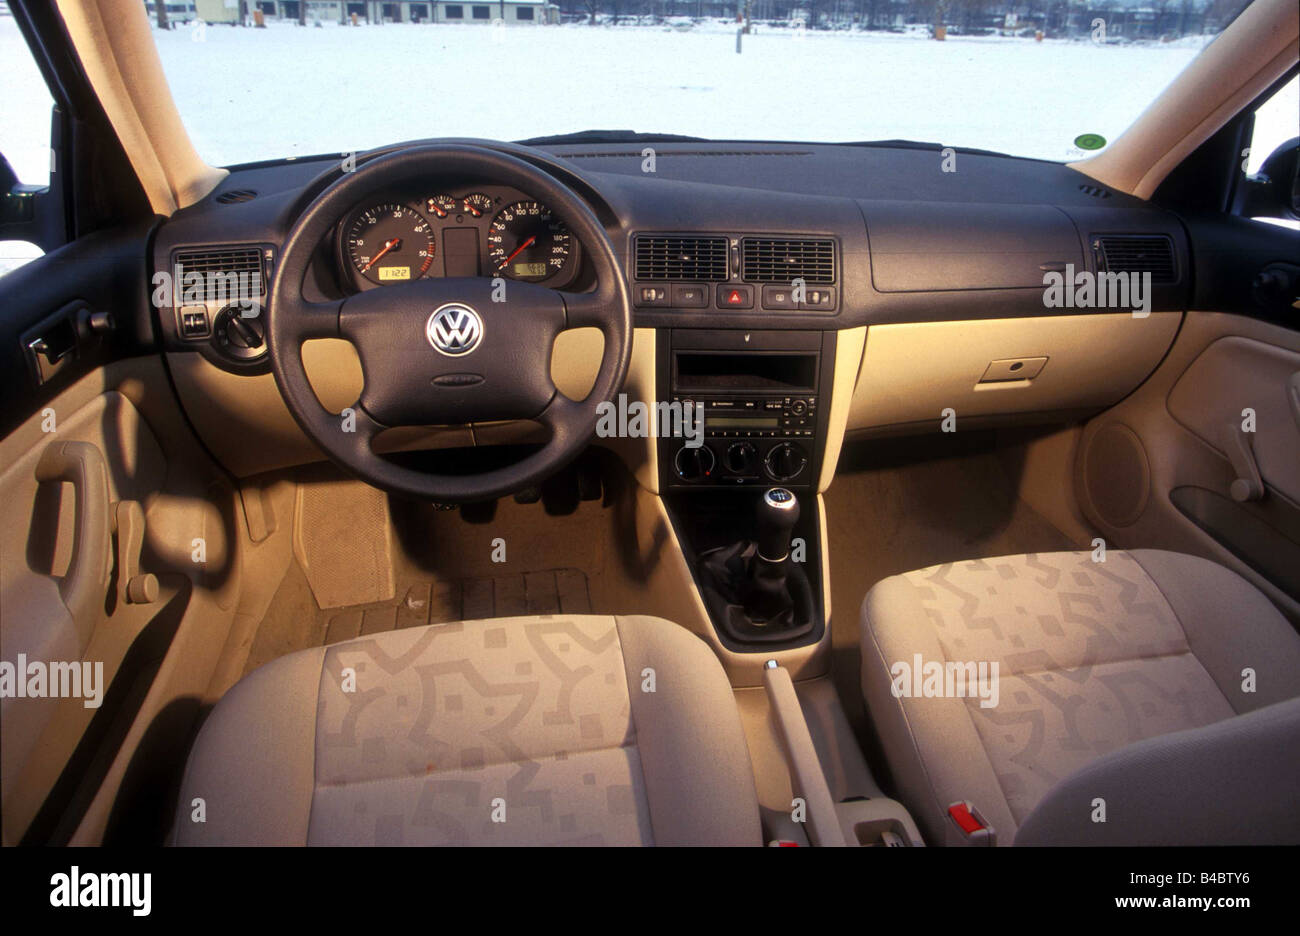 Car Vw Volkswagen Golf Tdi 4motion Variant Hatchback